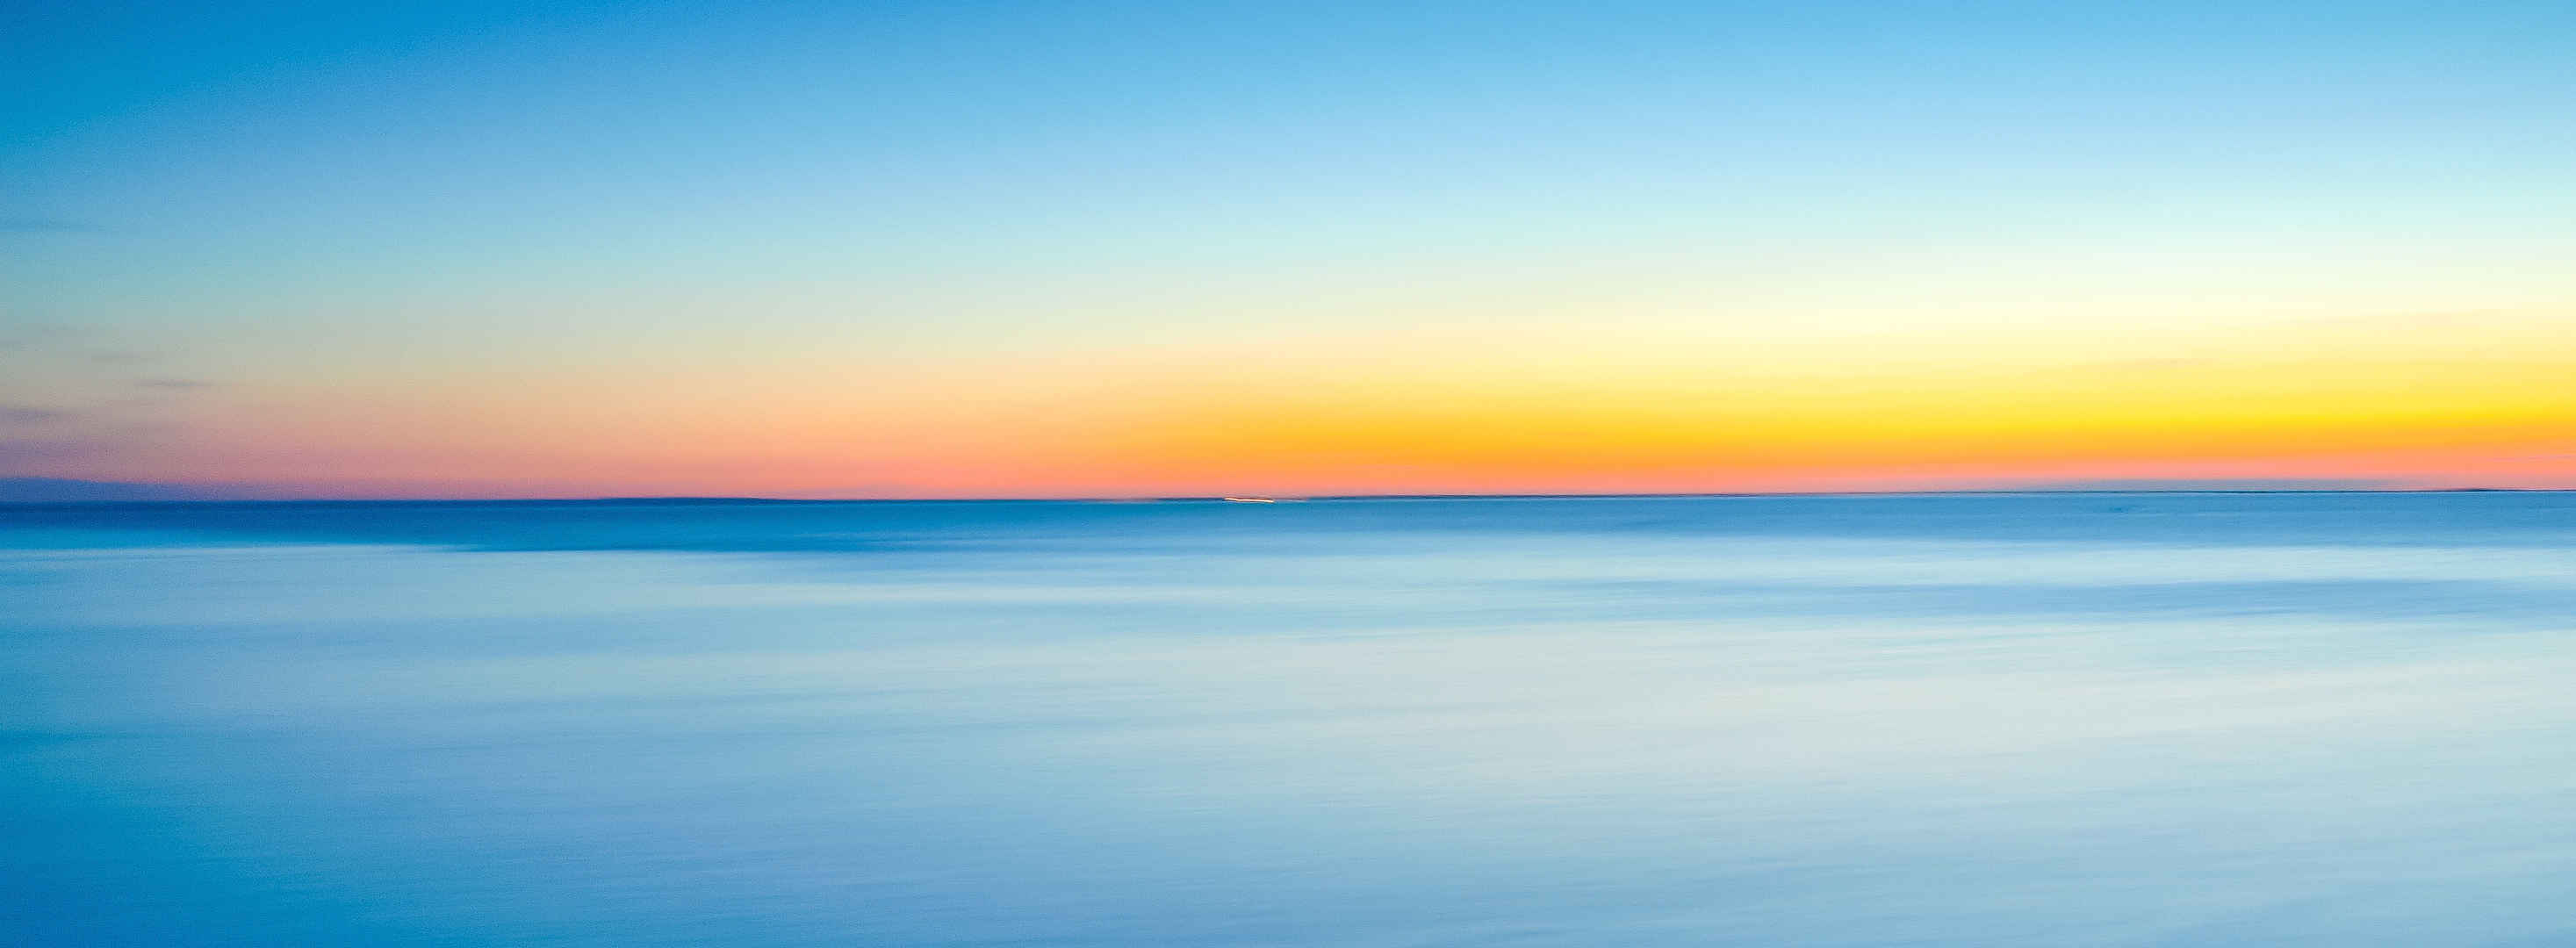 蓝色摄影日出日落唯美海上壁纸-